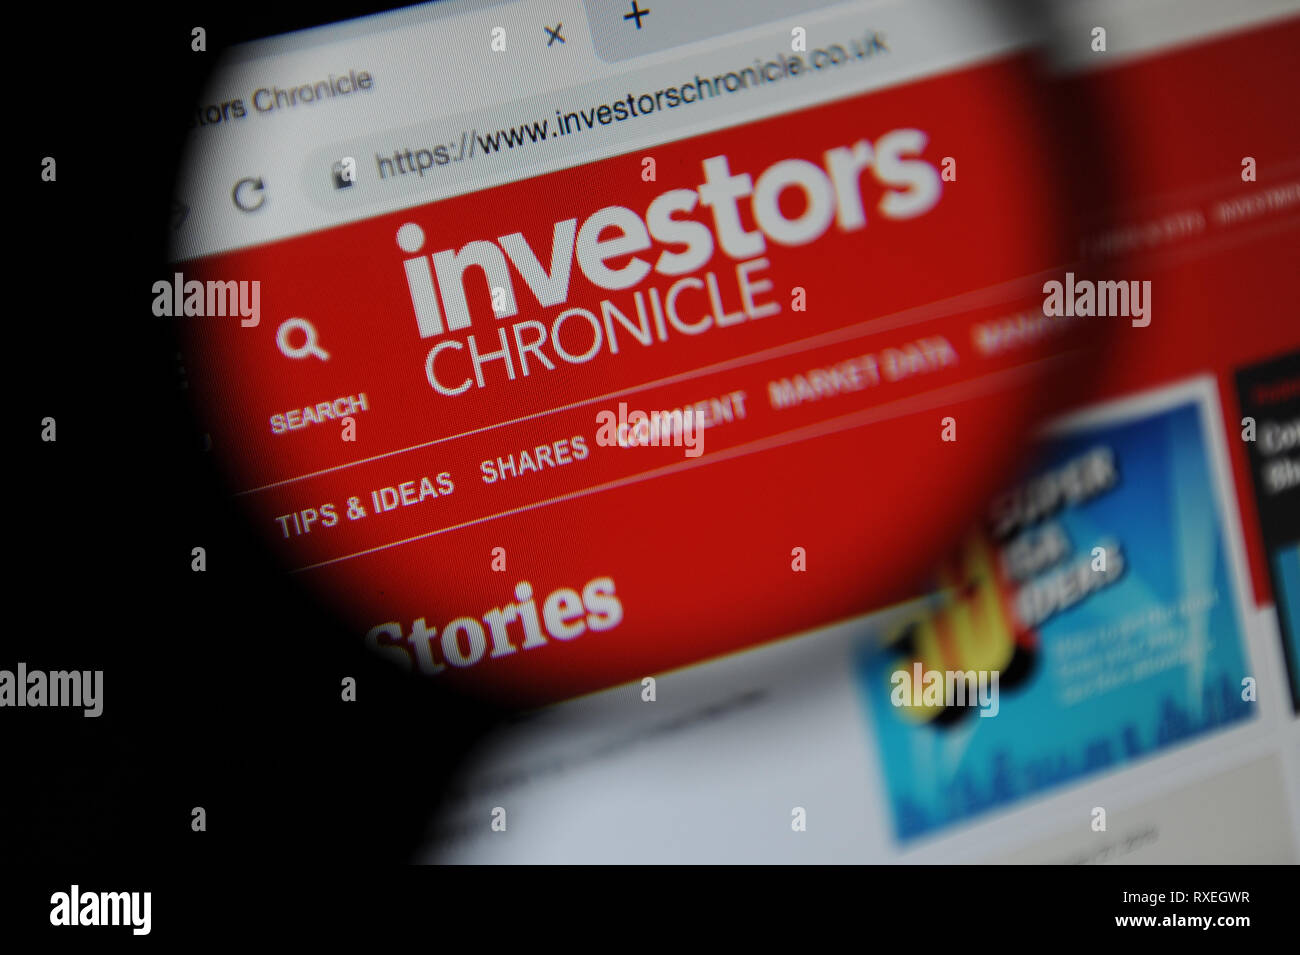 Los inversores Chronicle website vistos a través de una lupa Foto de stock